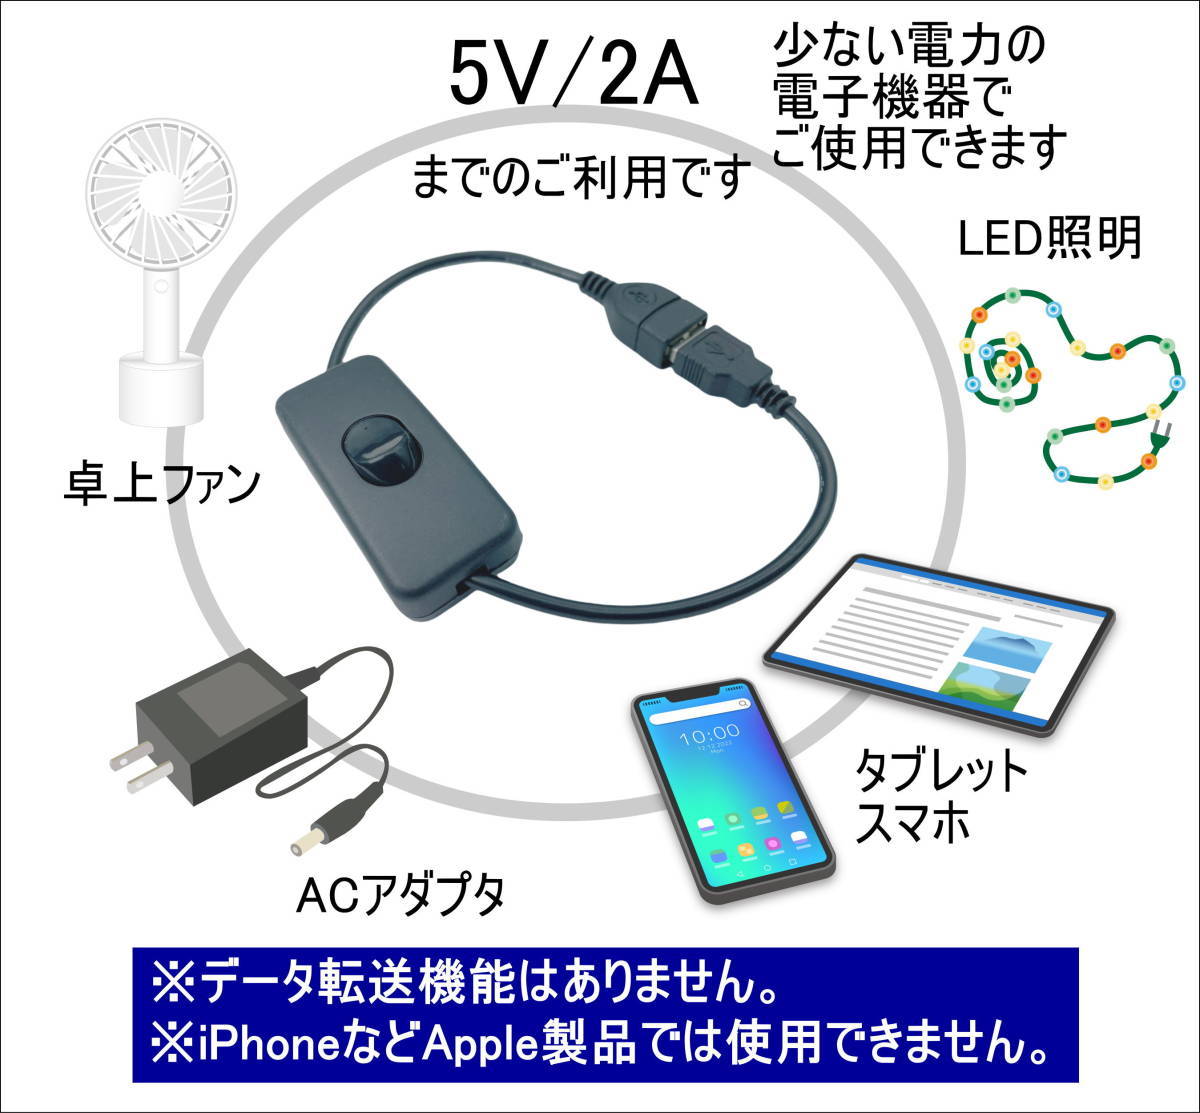 【2本】USB電源 ON-OFFスイッチ付き 延長ケーブル 5V/2A 30cm USBケーブル(オス/メス) LED照明や小型ファンなどの小電力機器用